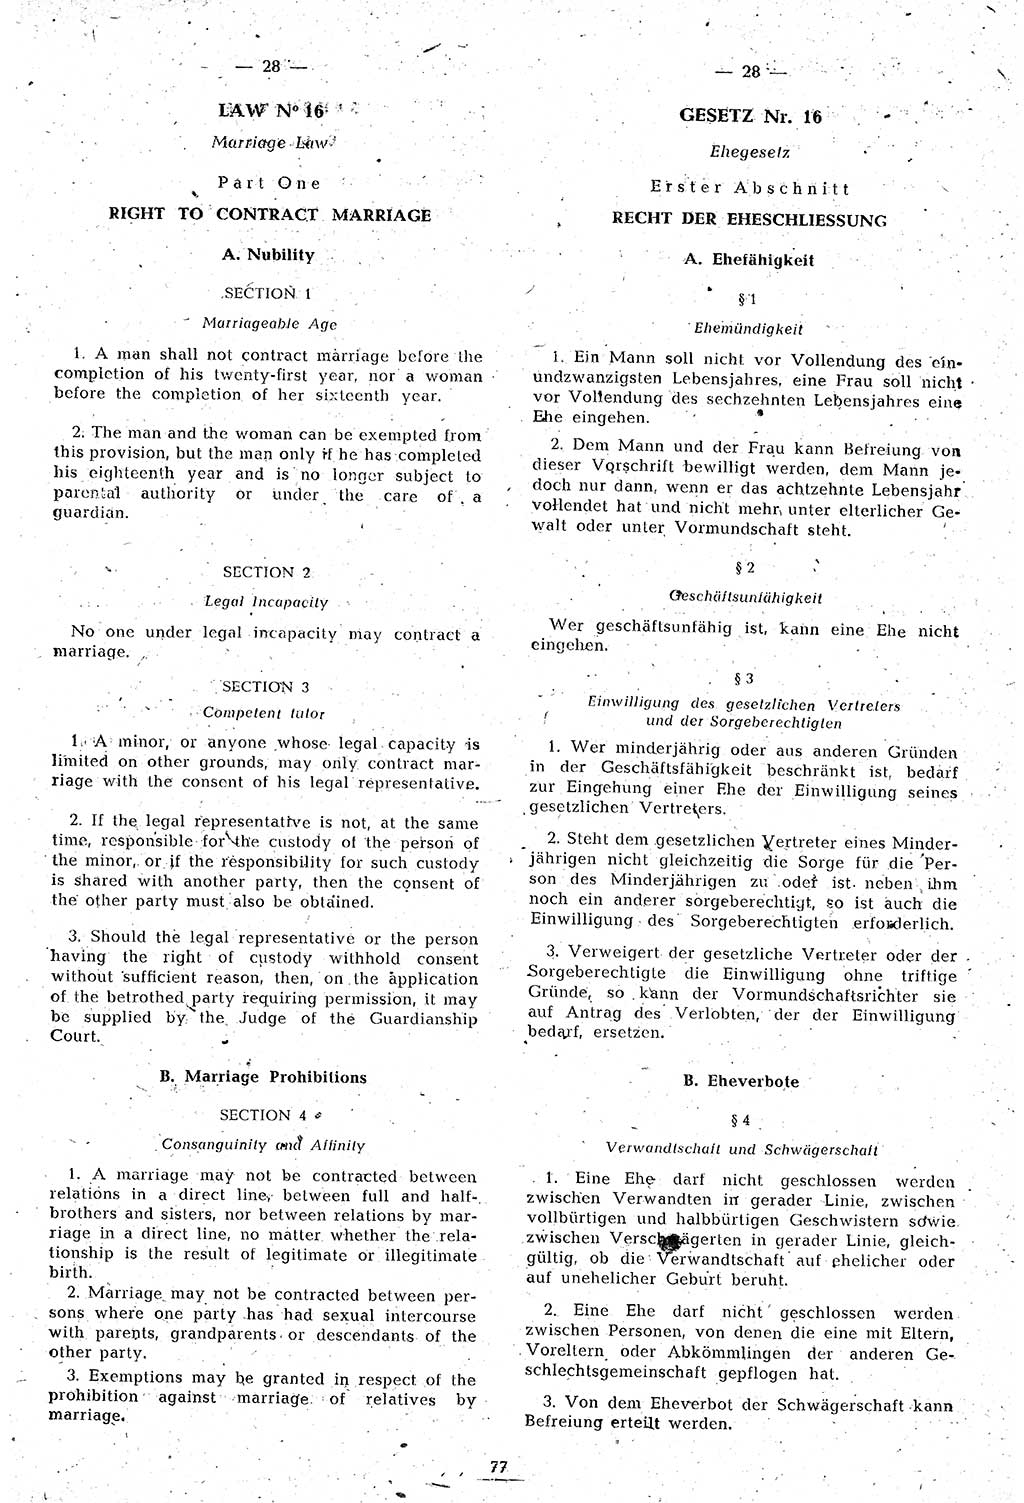 Amtsblatt des Kontrollrats (ABlKR) in Deutschland 1946, Seite 77/2 (ABlKR Dtl. 1946, S. 77/2)